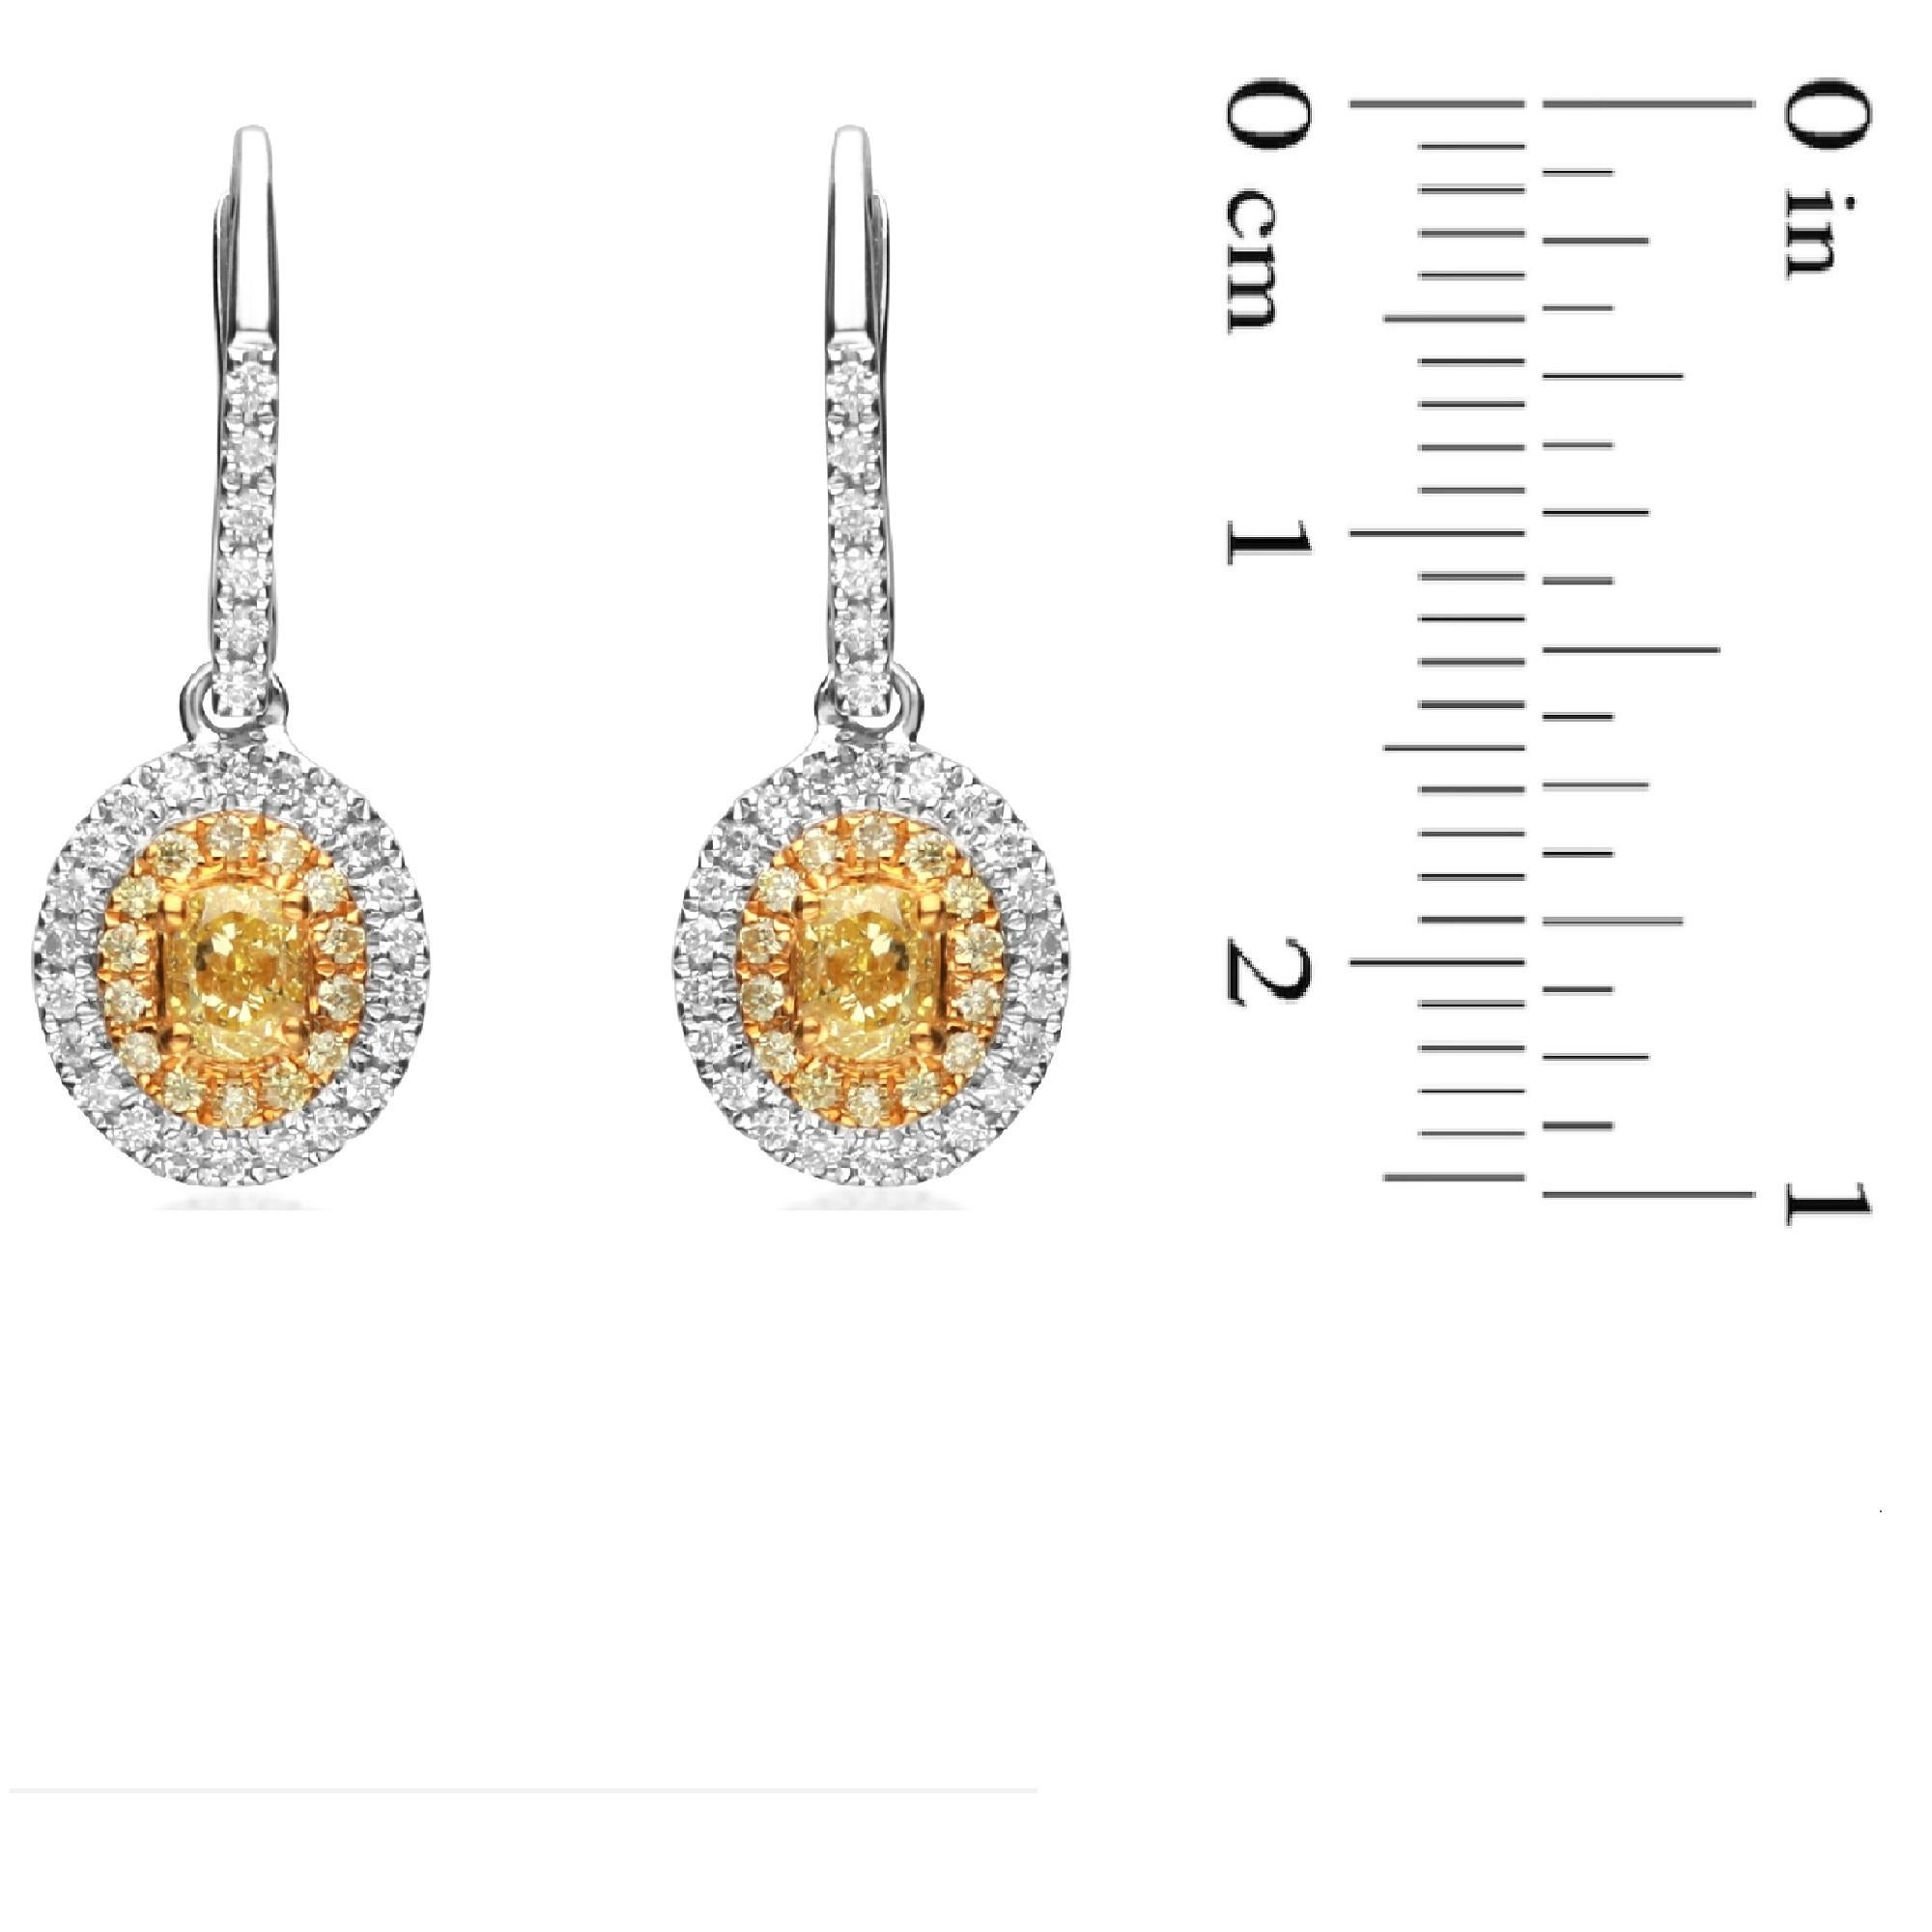 Oval Cut 0.84 Carat T.W. Yellow Diamond 18 Karat Two-Tone Gold Earrings